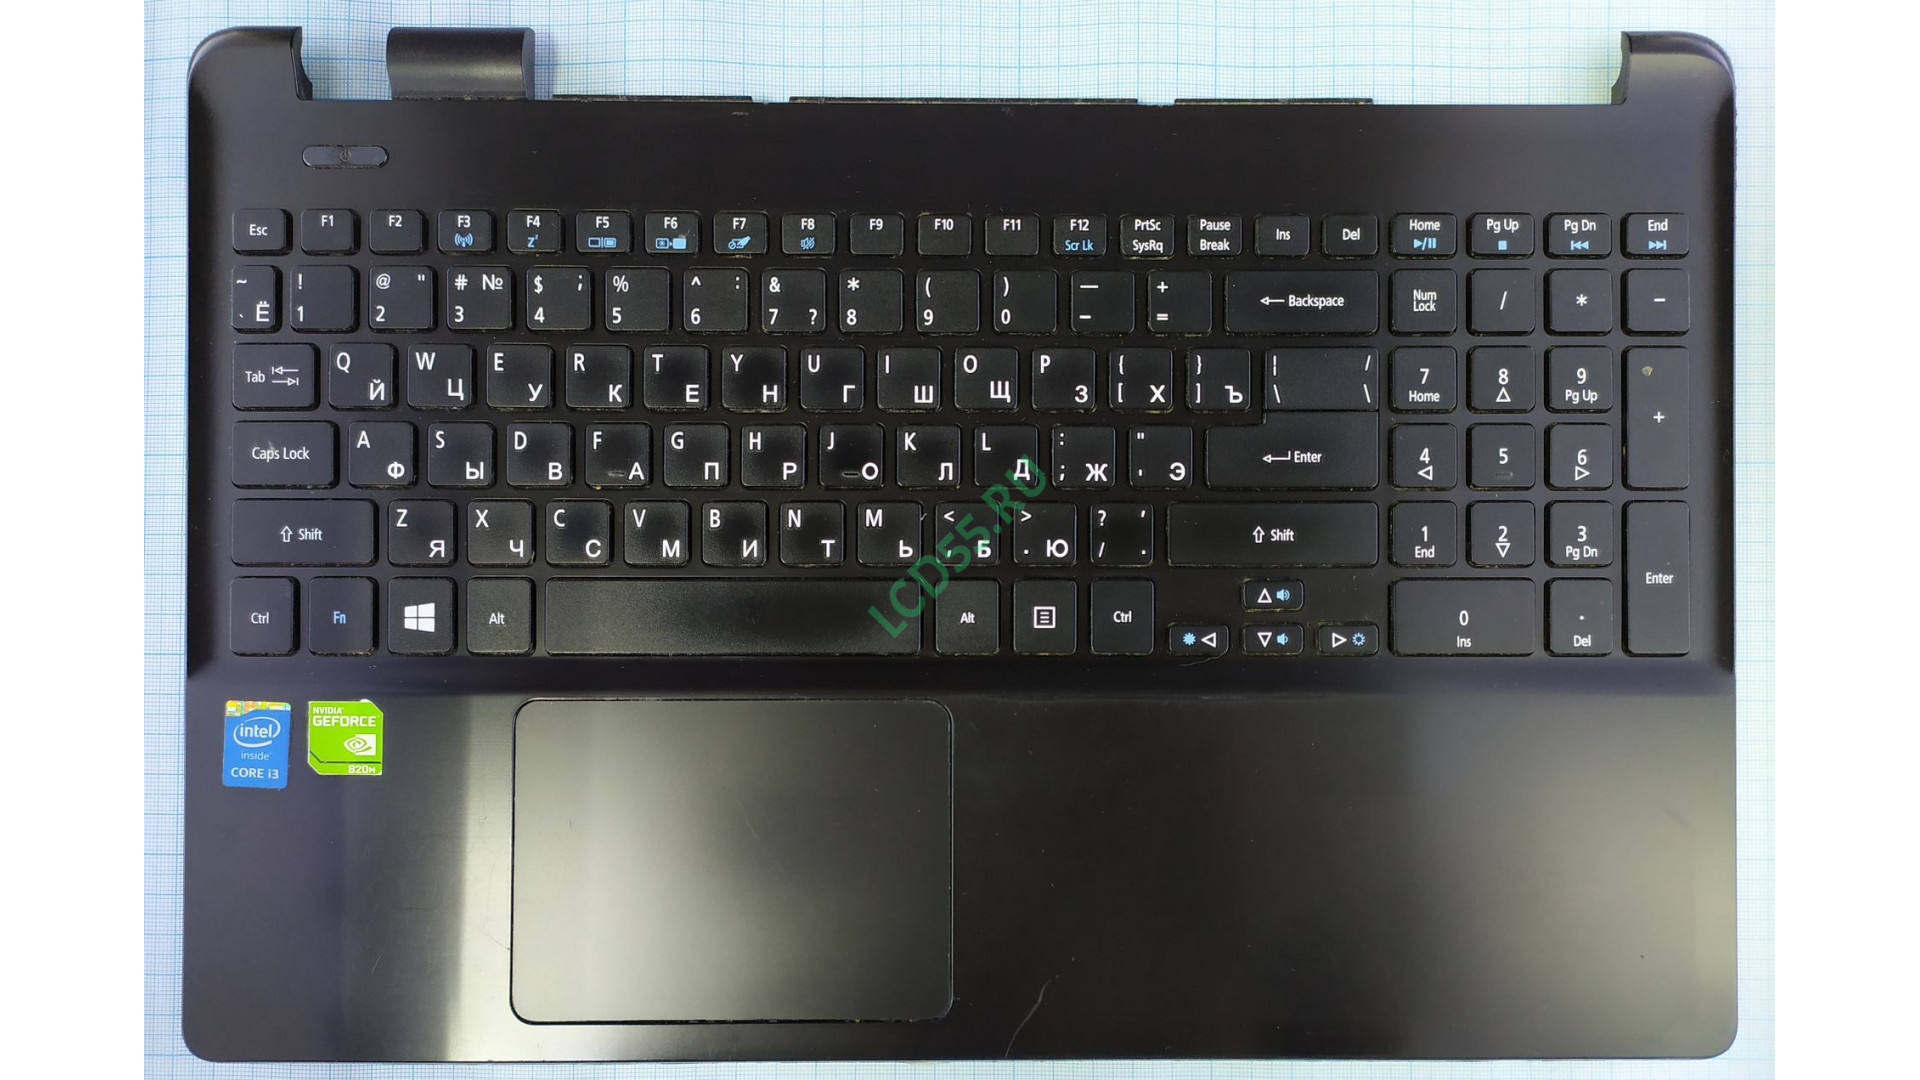 Top Case в сборе с клавиатурой Acer Aspire E5-531, E5-571 б/у